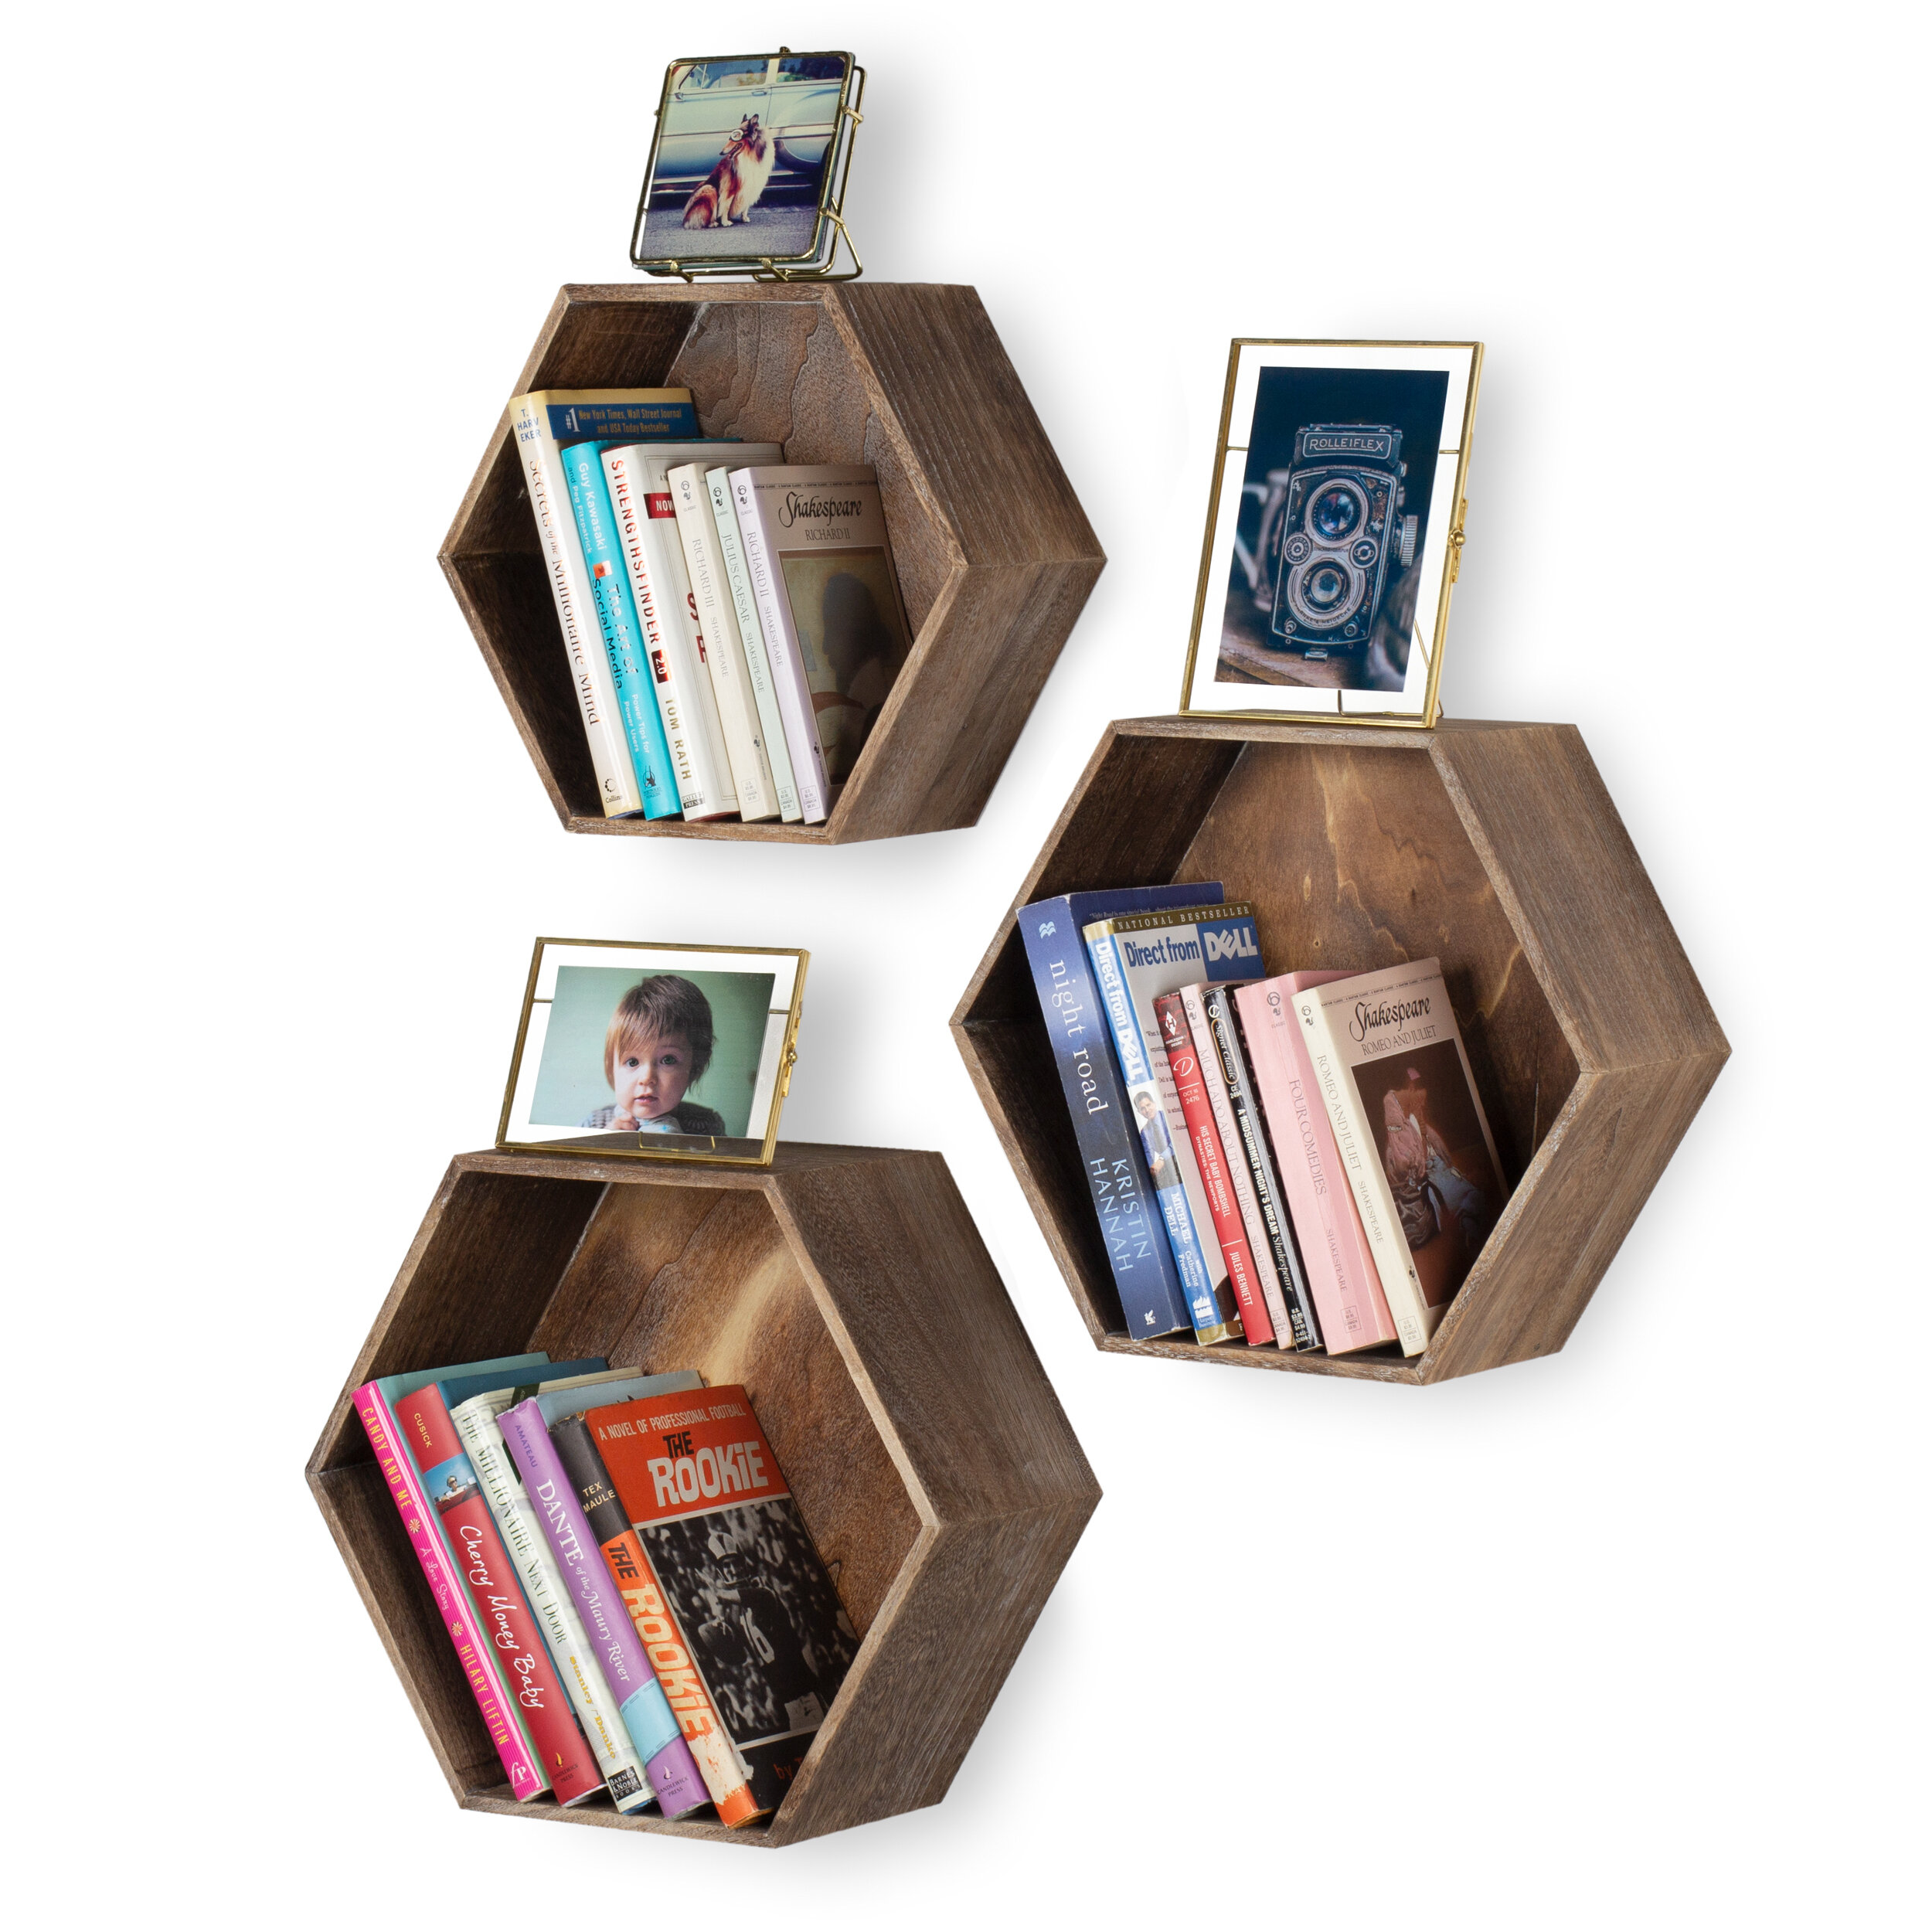 Handmade Wooden Hexagon Shelves  Display Shelves  Walnut Wax Finish  Set Of 3 